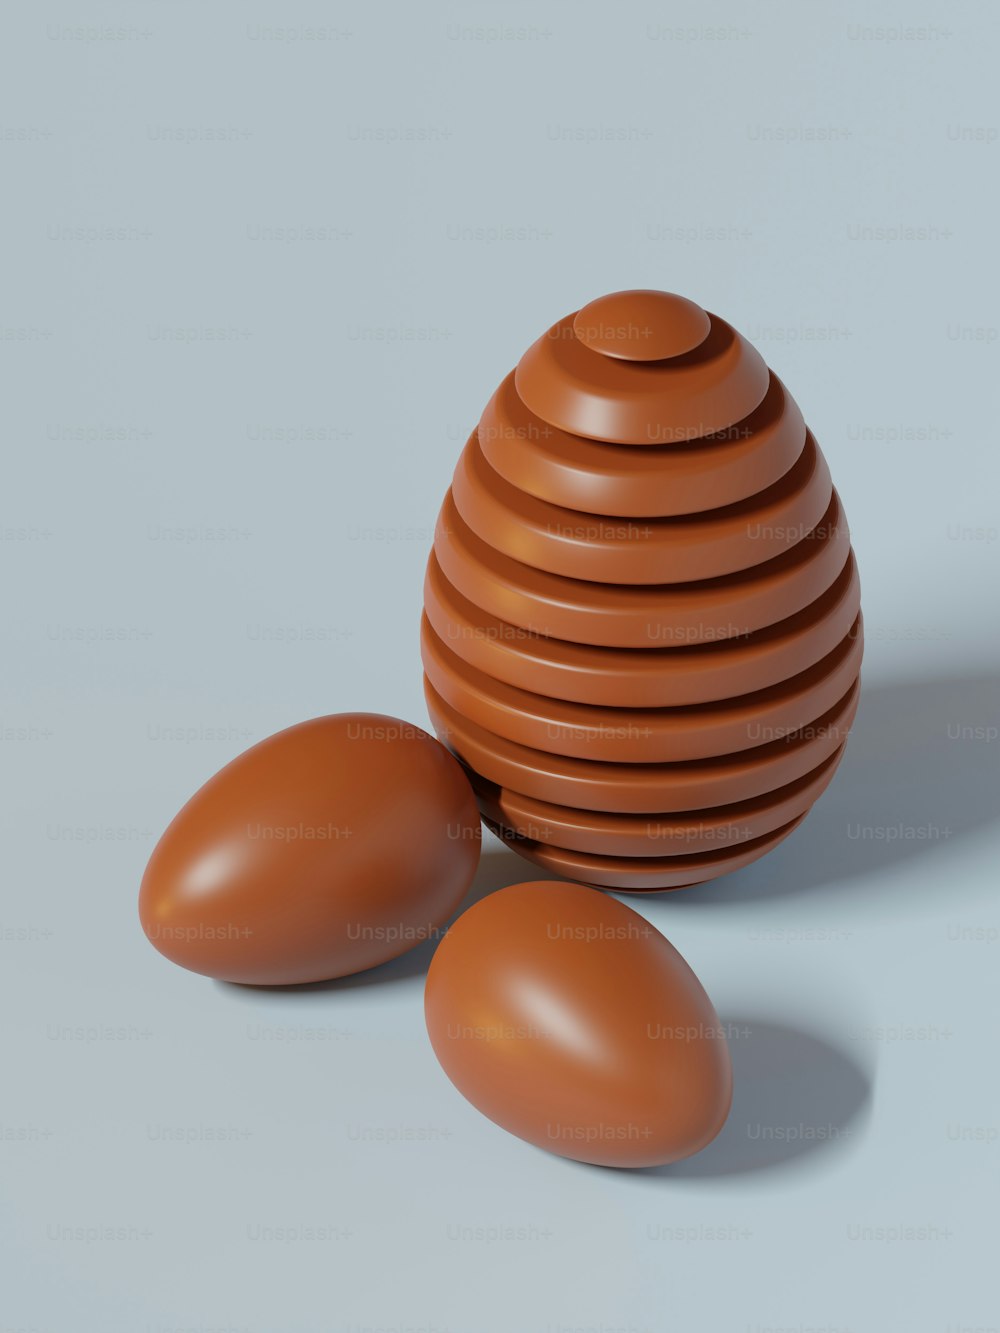 갈색 달걀 더미 위에 앉아있는 갈색 달걀